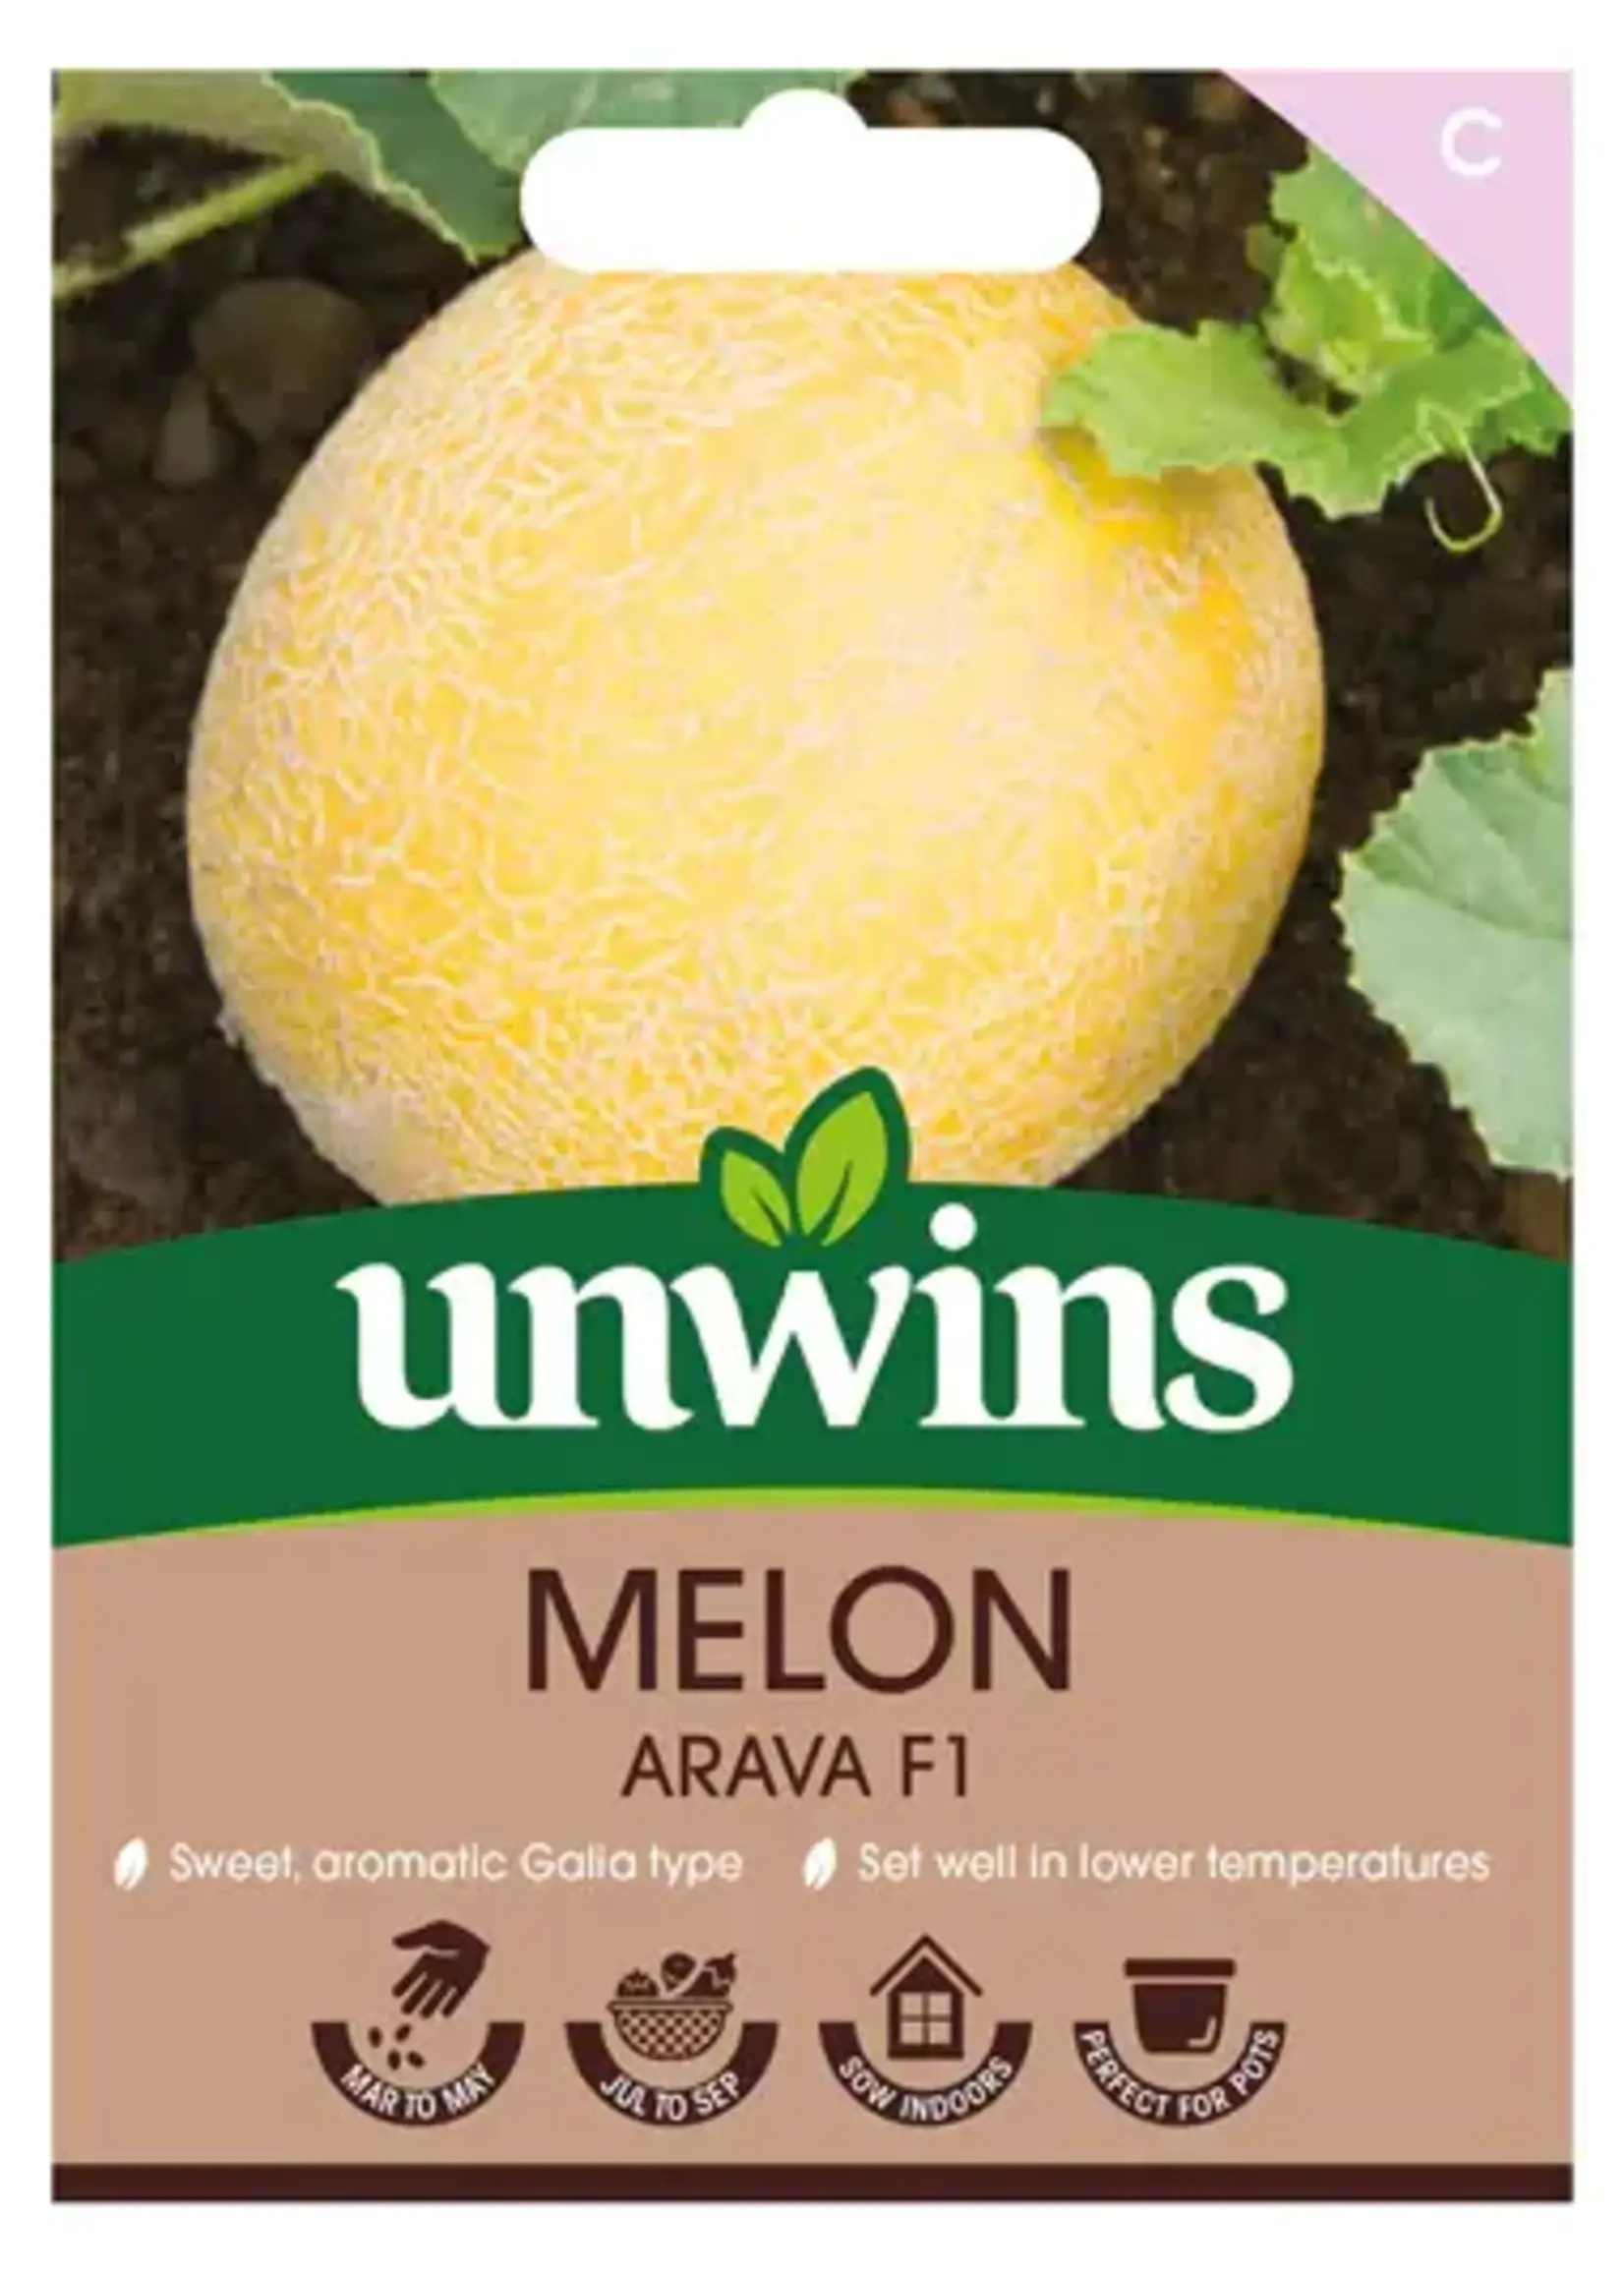 Unwins Melon - Arava F1